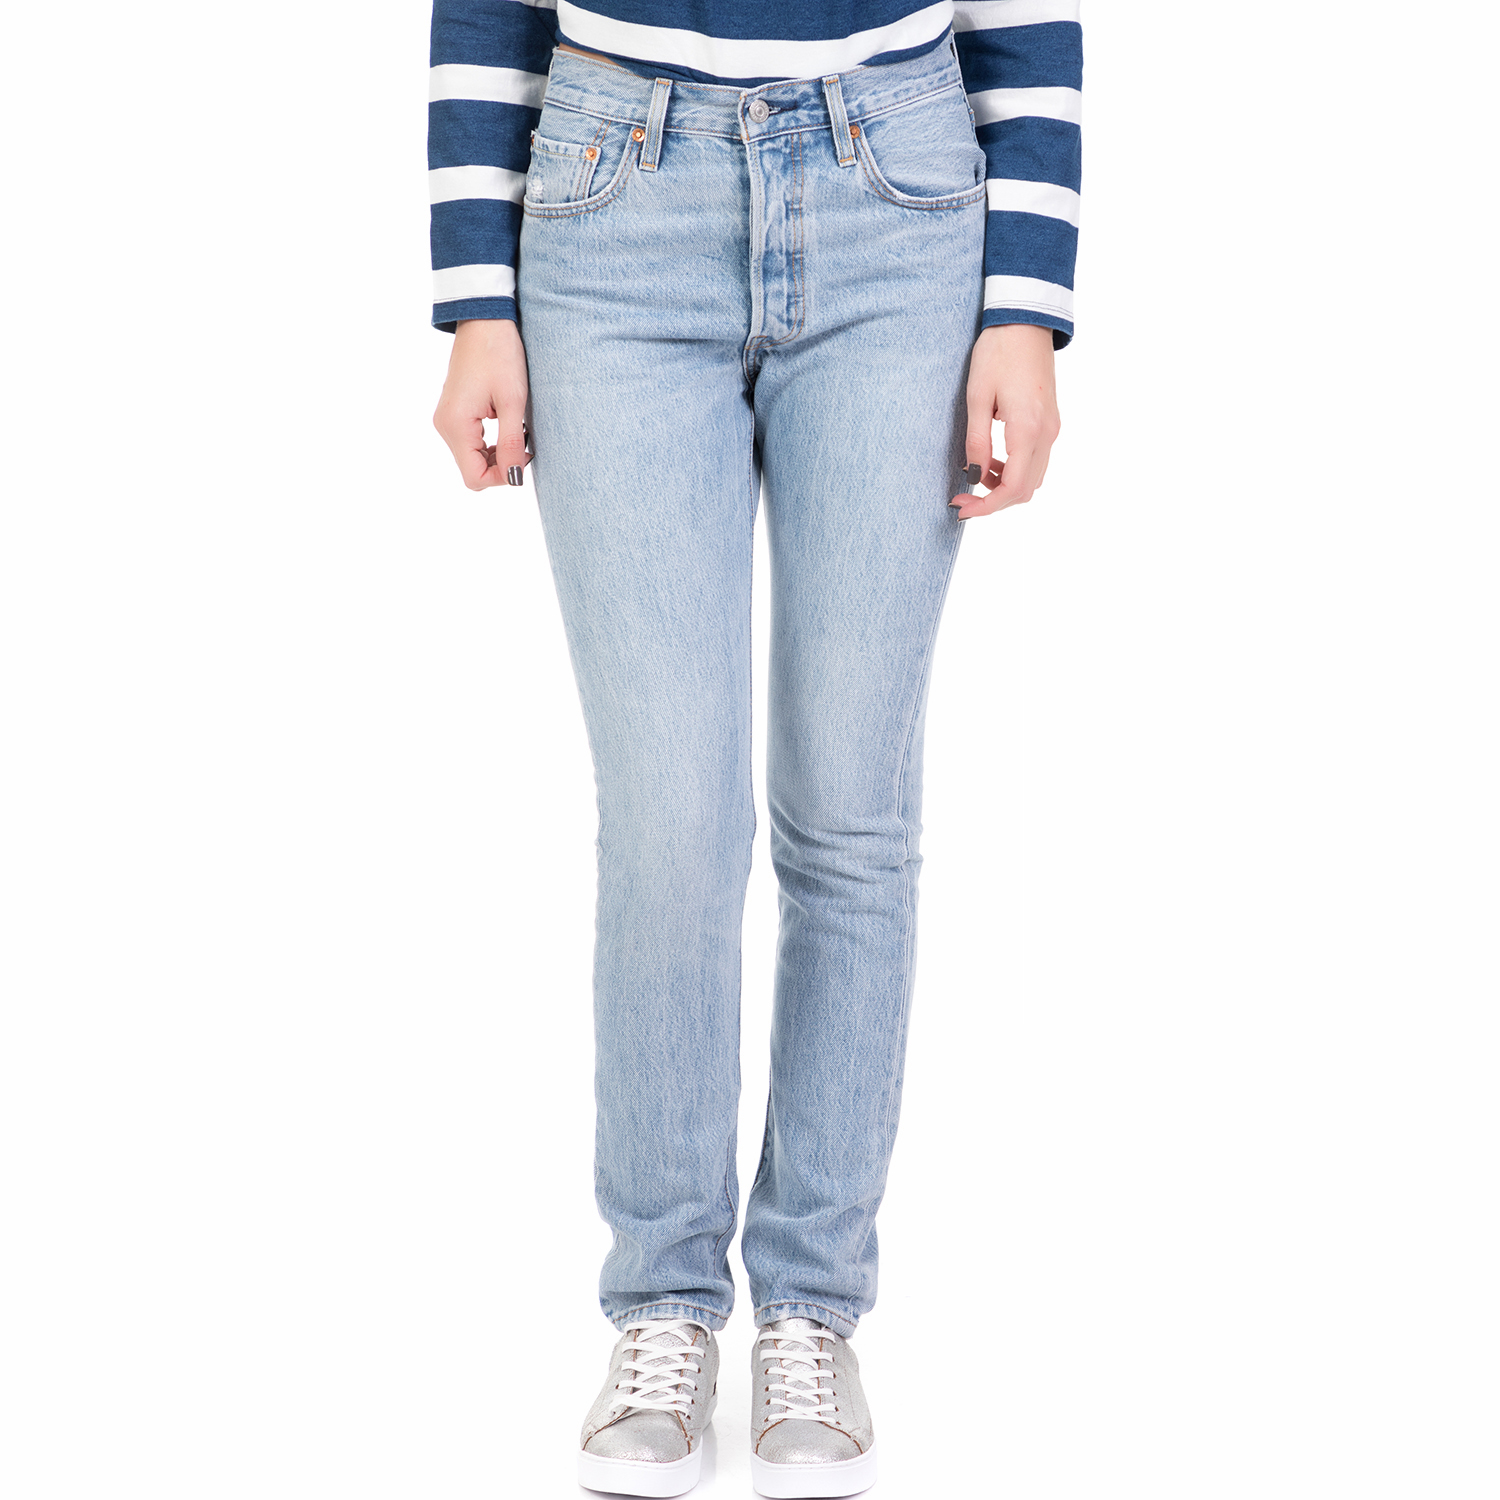 Γυναικεία/Ρούχα/Τζίν/Skinny LEVI'S - Γυναικείο ψηλόμεσο τζιν παντελόνι LEVI'S 501 SKINNY LOVEFOOL μπλε